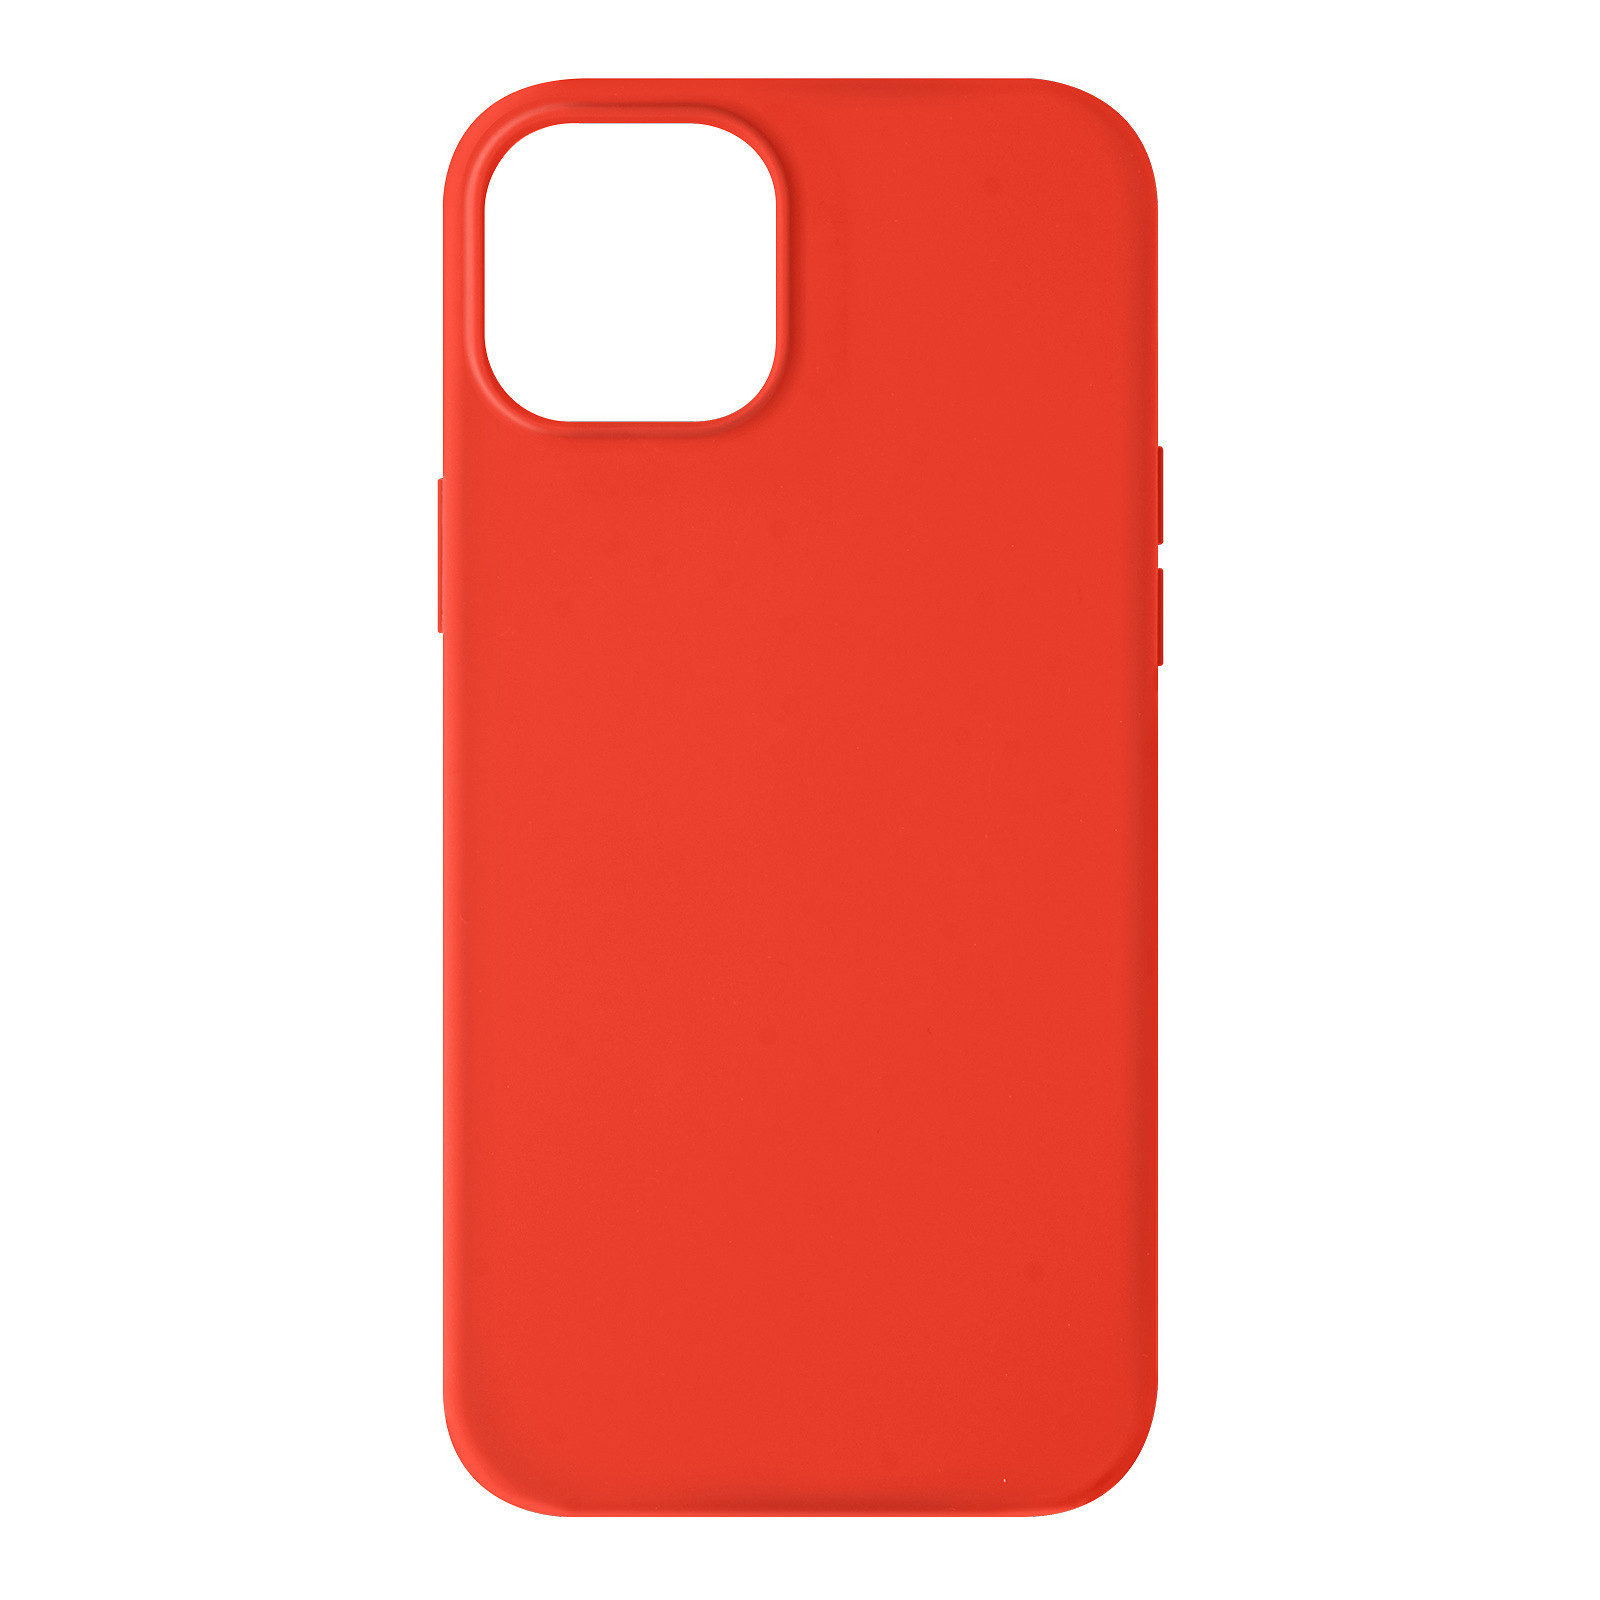 Avizar Coque pour iPhone 13 Mini Silicone Semi-rigide Finition Soft-touch corail - Coque telephone Avizar